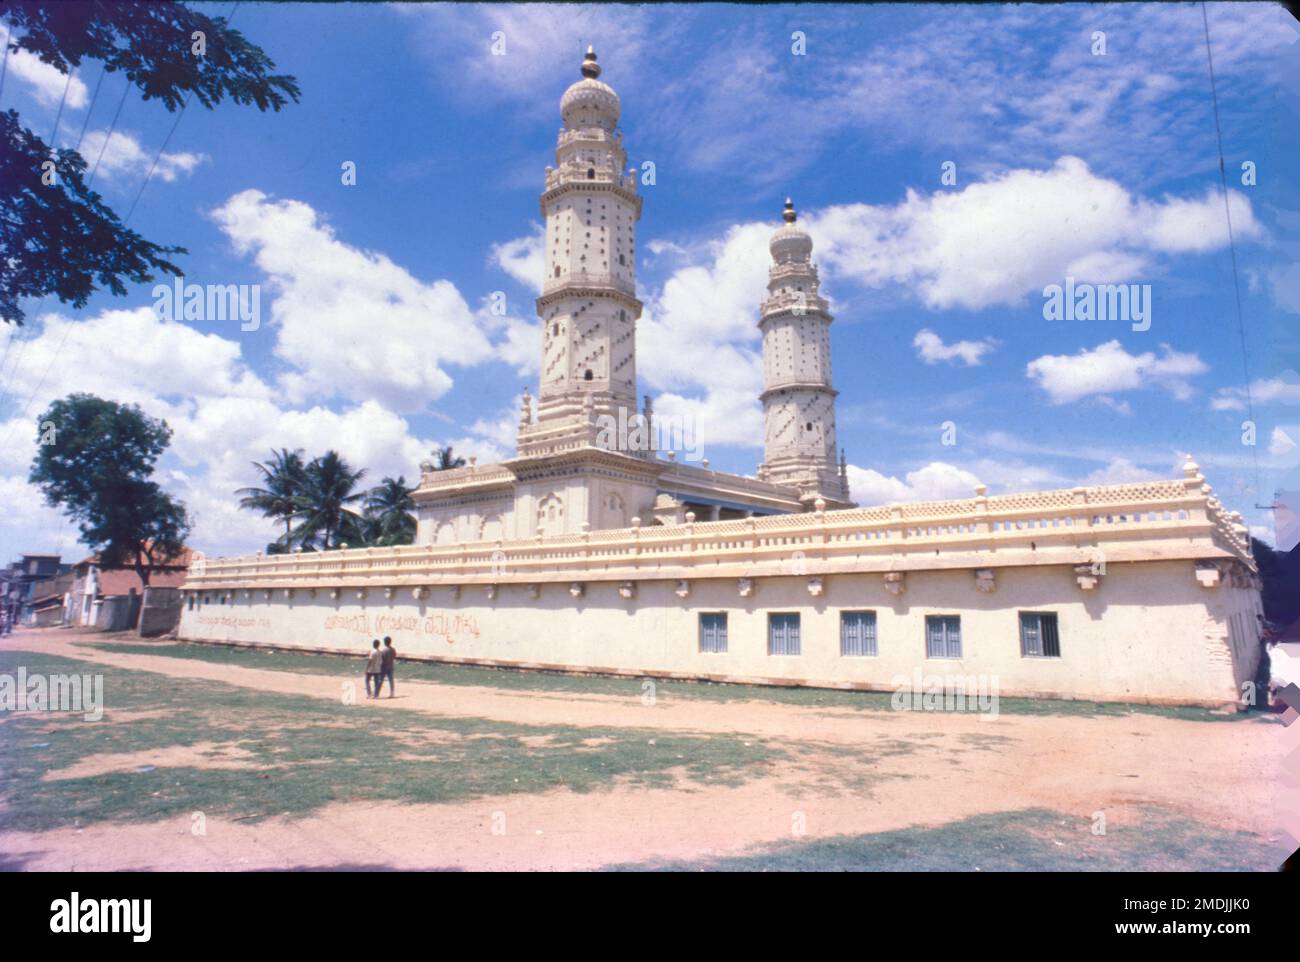 Masjid-i-Ala est une mosquée située à l'intérieur du fort de Srirangapatna, à Srirangapatna, dans le district de Mandya, à Karnataka. Il a été construit en 1786-87, sous le régime de Tipu Sultan. Banque D'Images